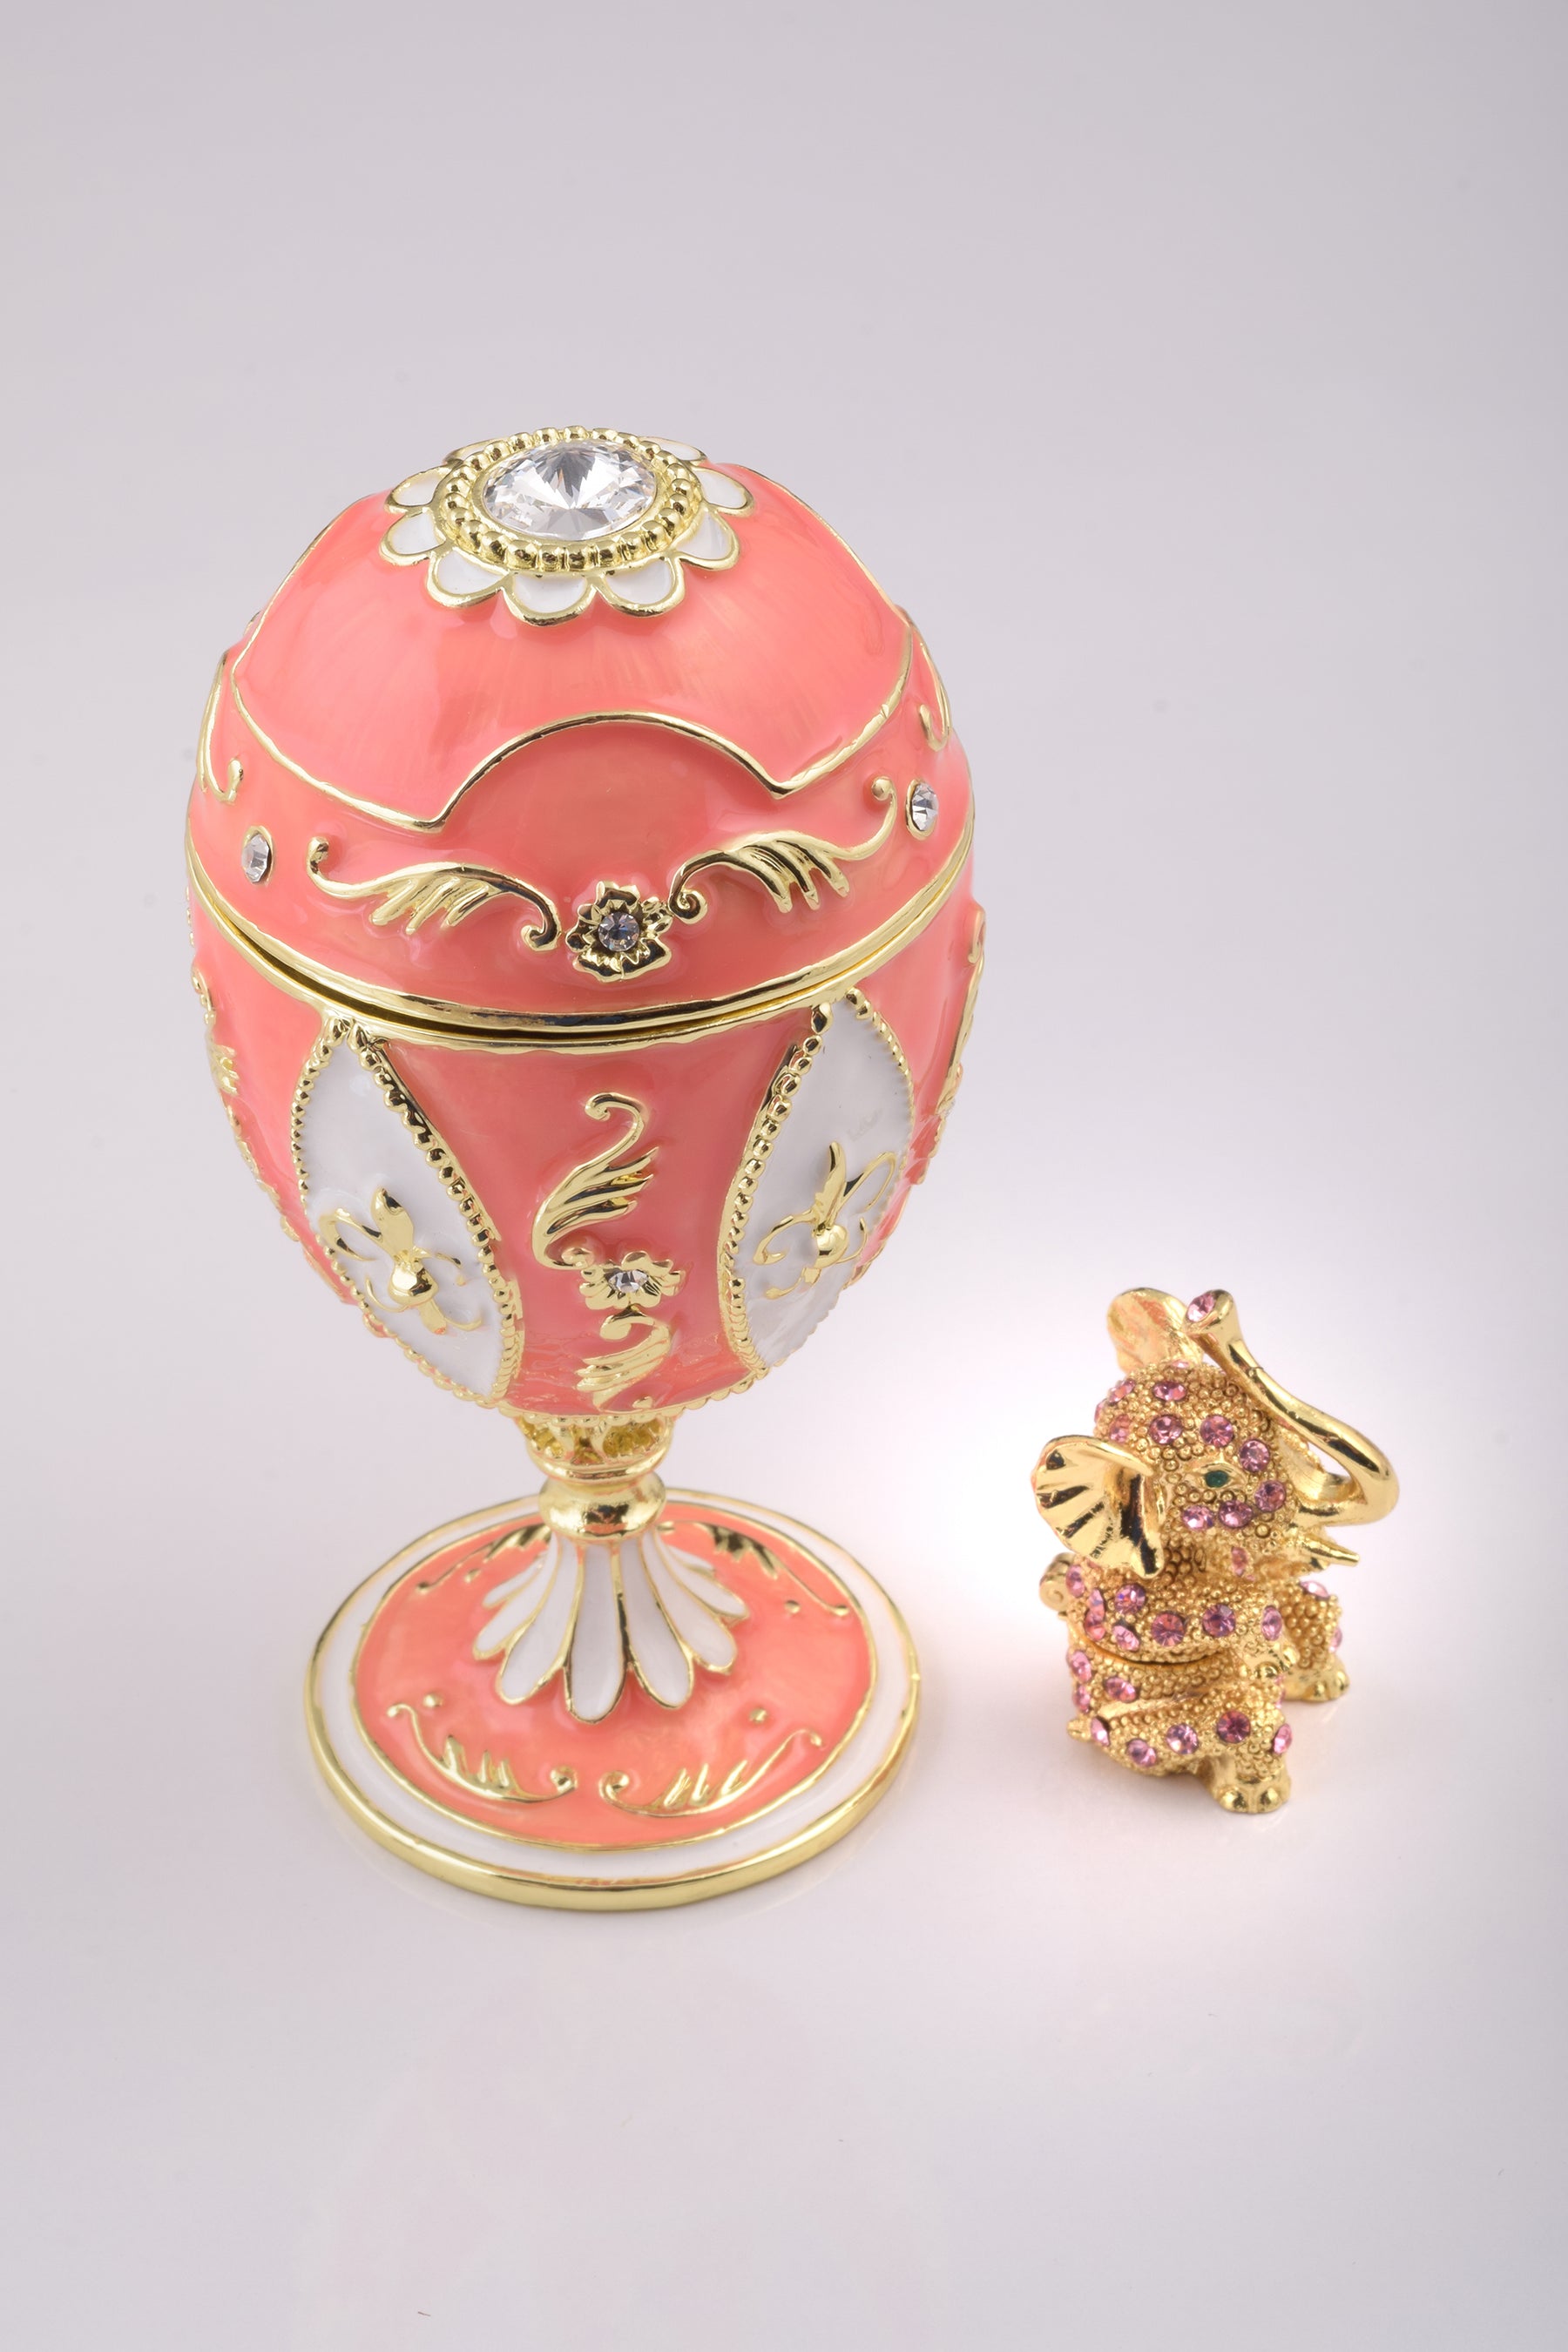 Rosa Fabergé-Ei mit Elefant im Inneren